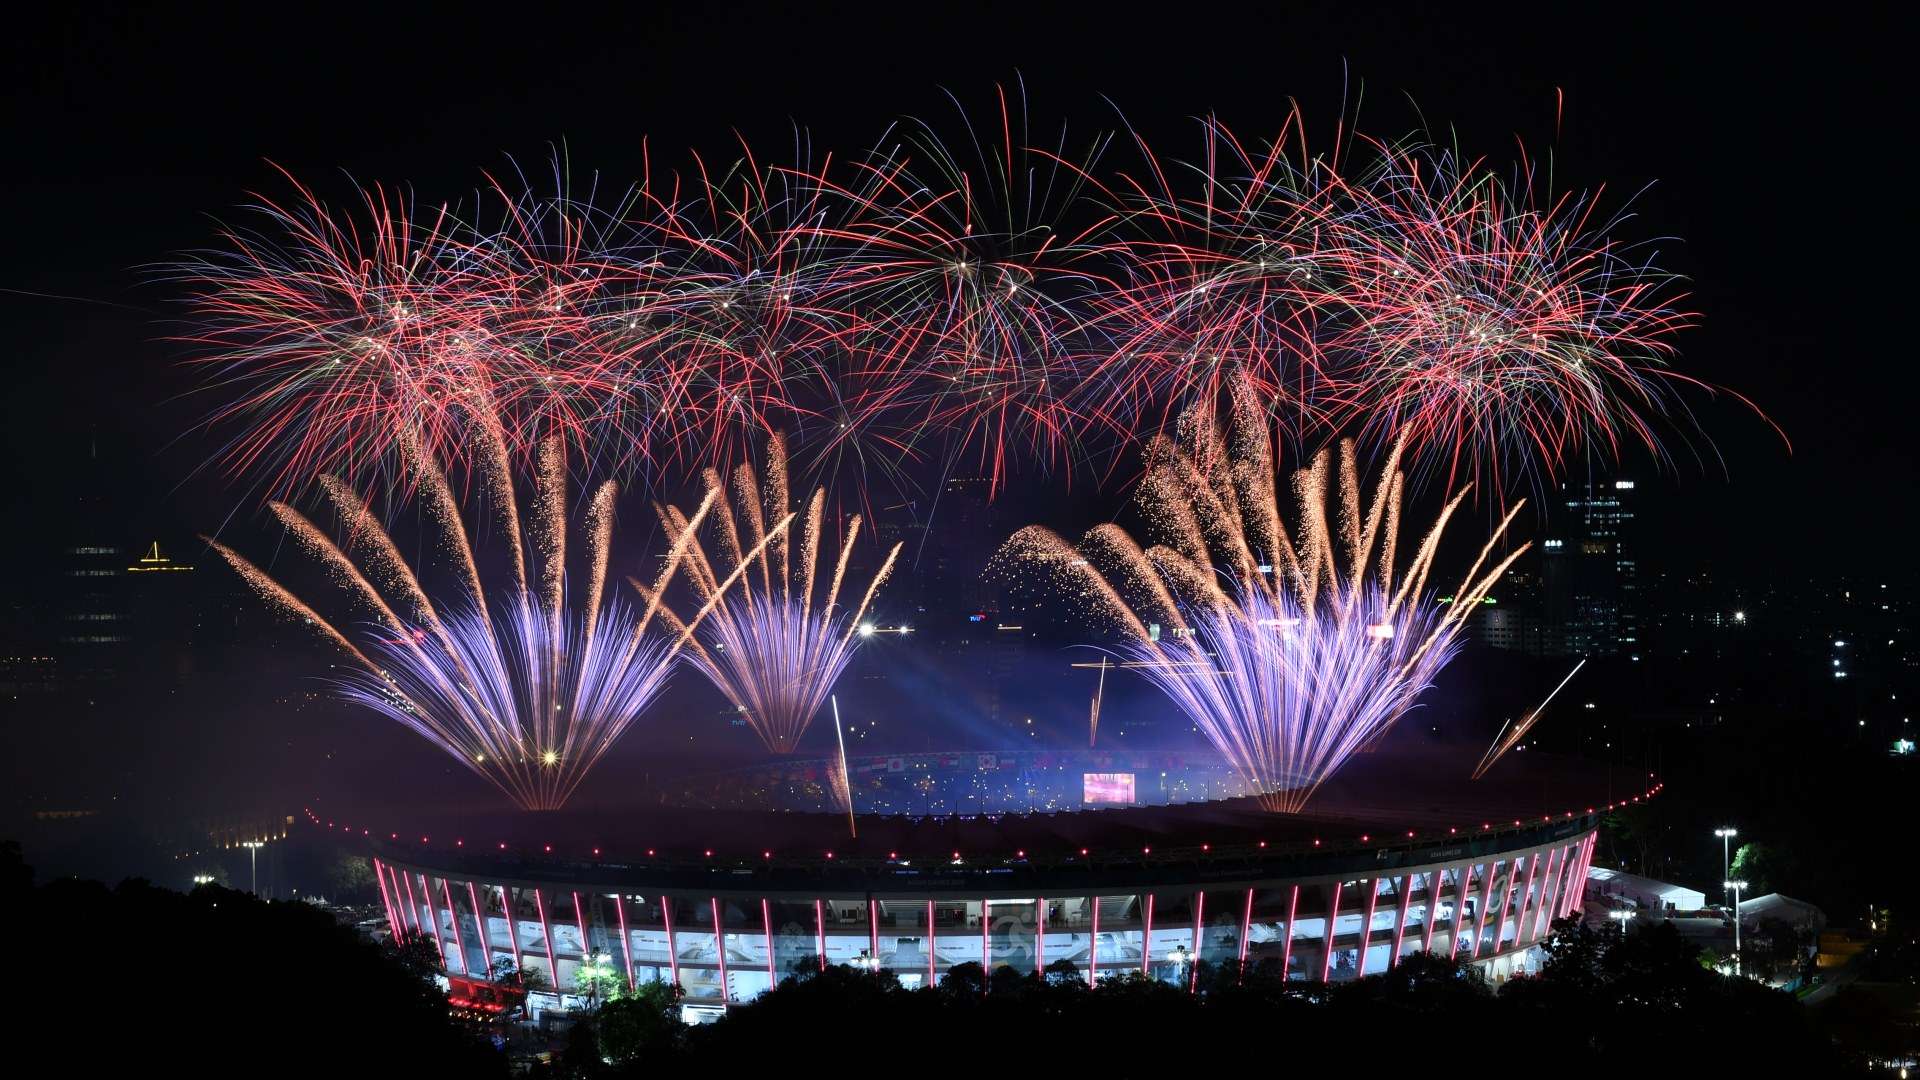 Stadion Utama Gelora Bung Karno - Asian Games 2018 - Opening Ceremony